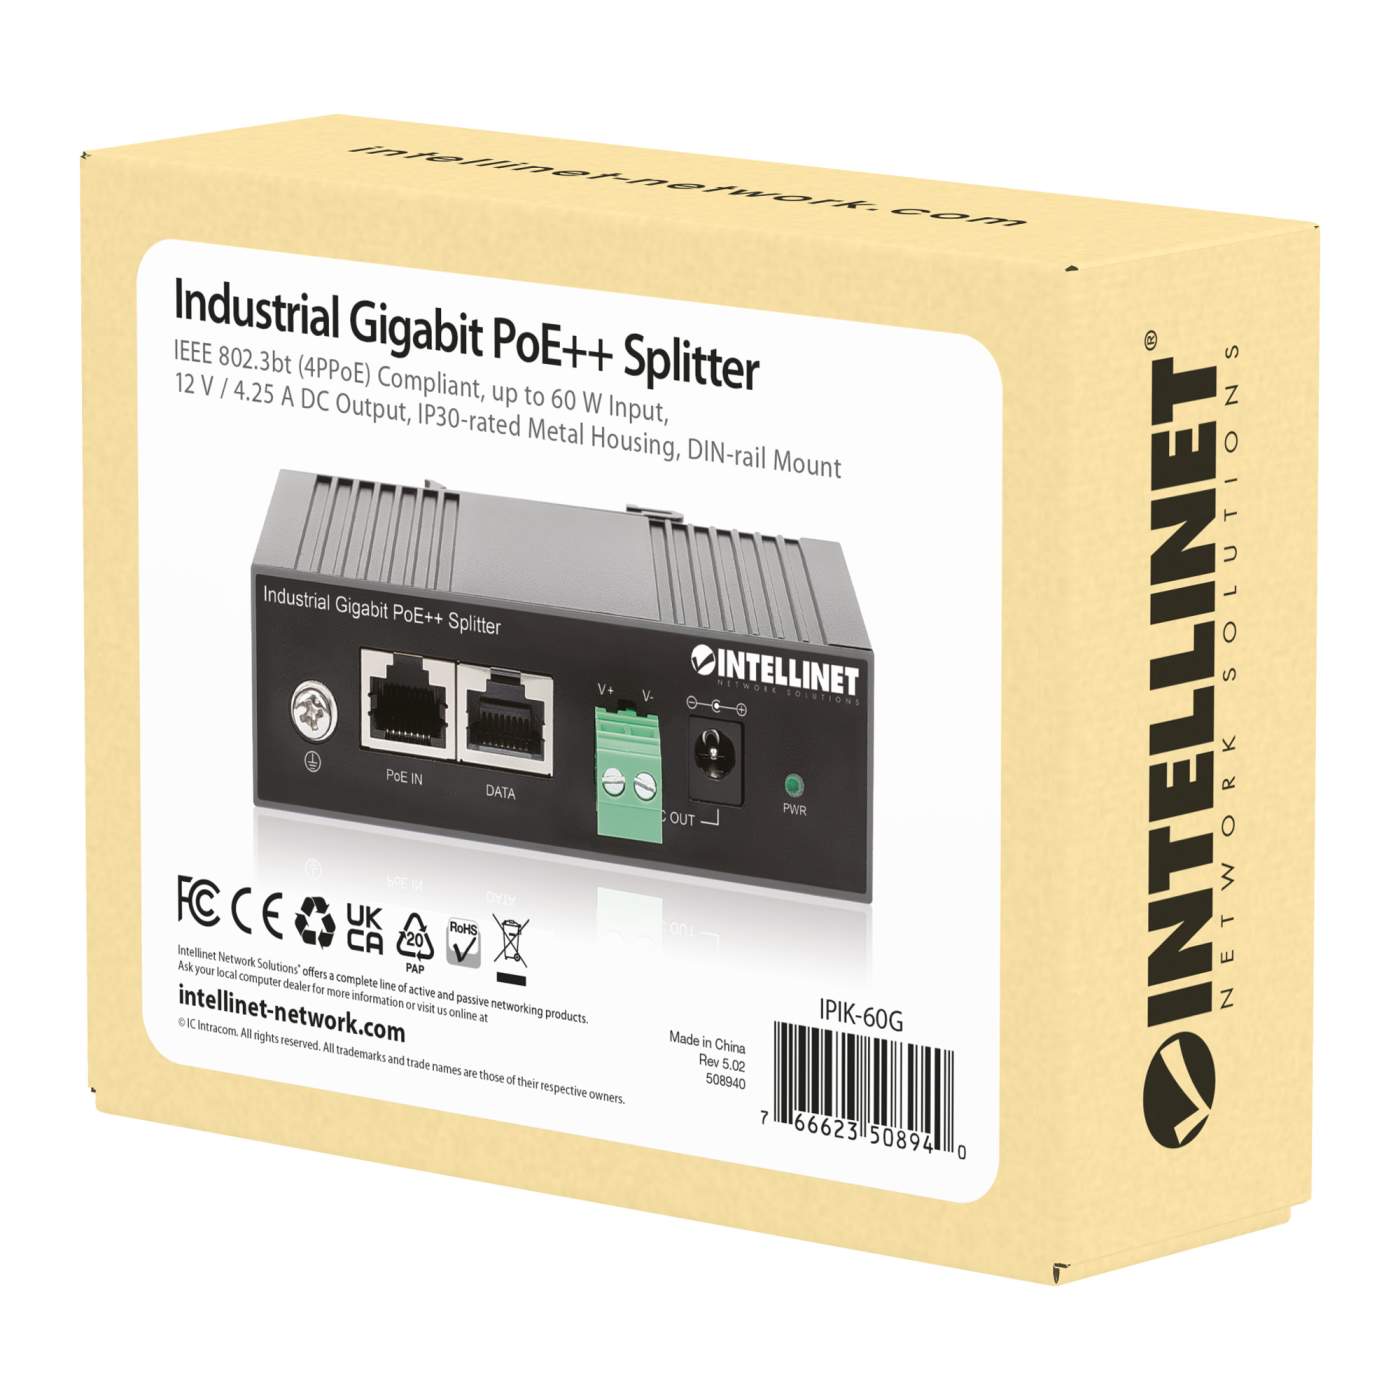 Industrial Gigabit PoE++ Splitter Packaging Image 2